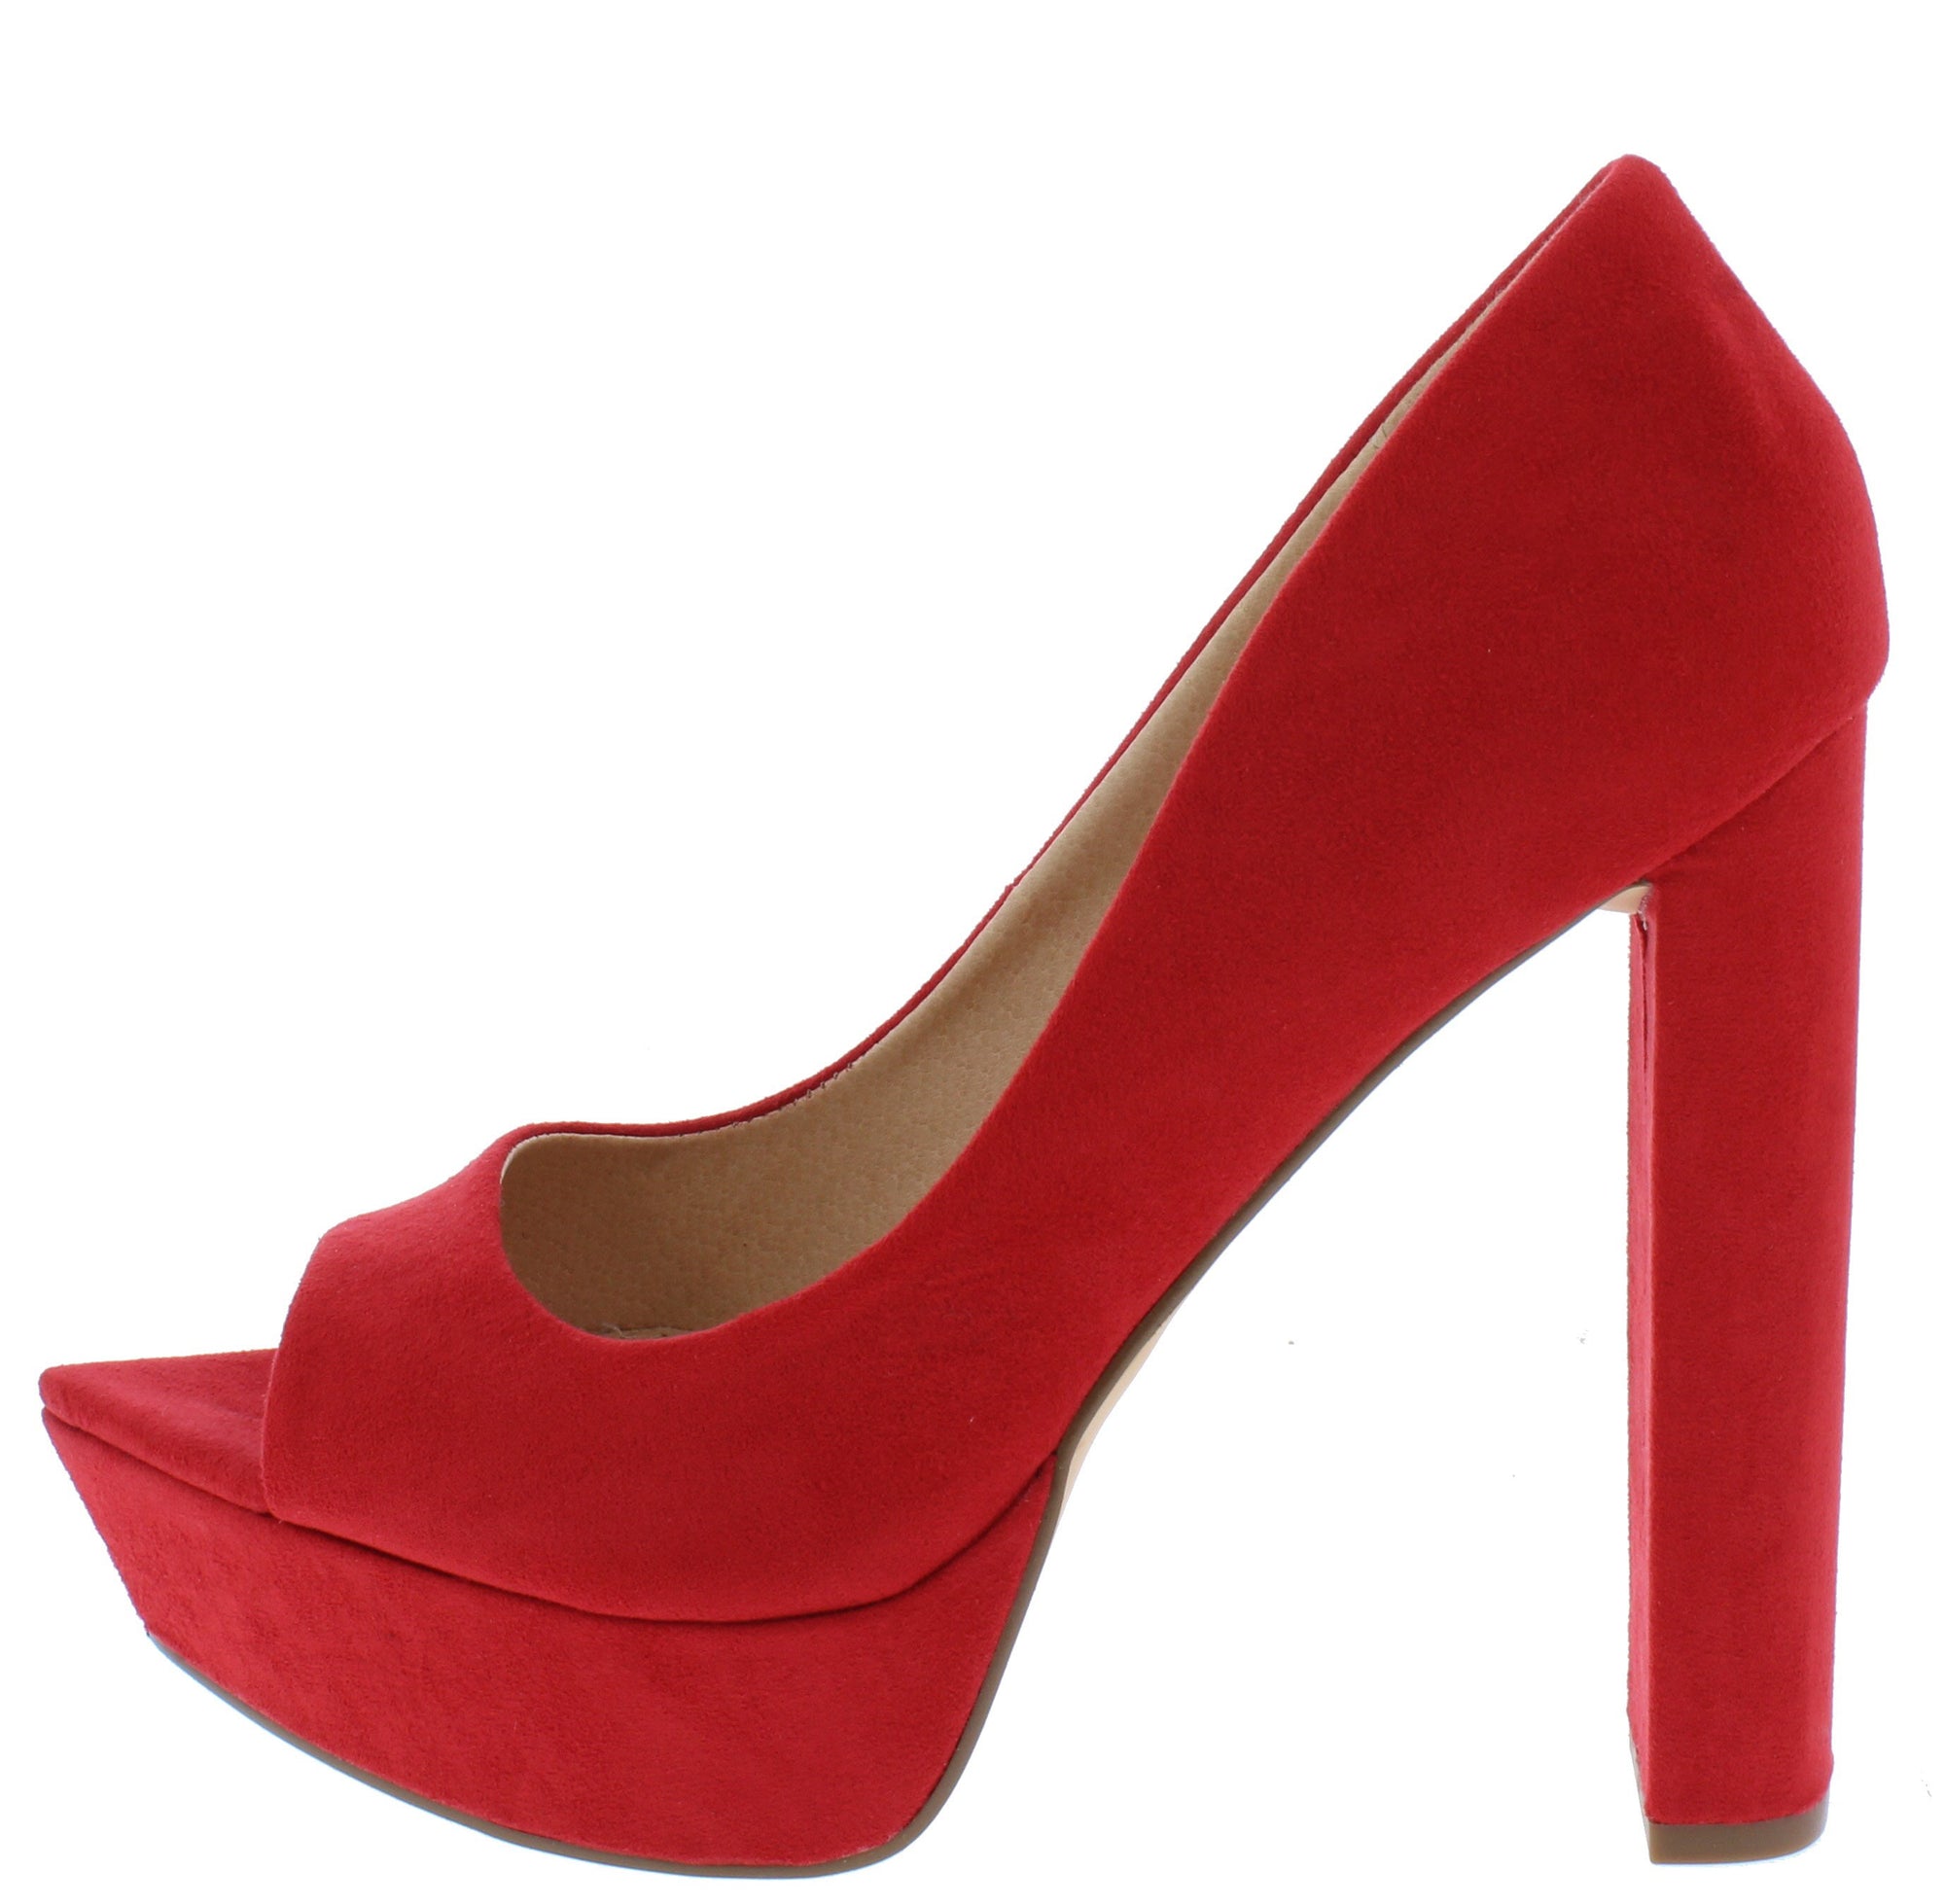 red platform block heels